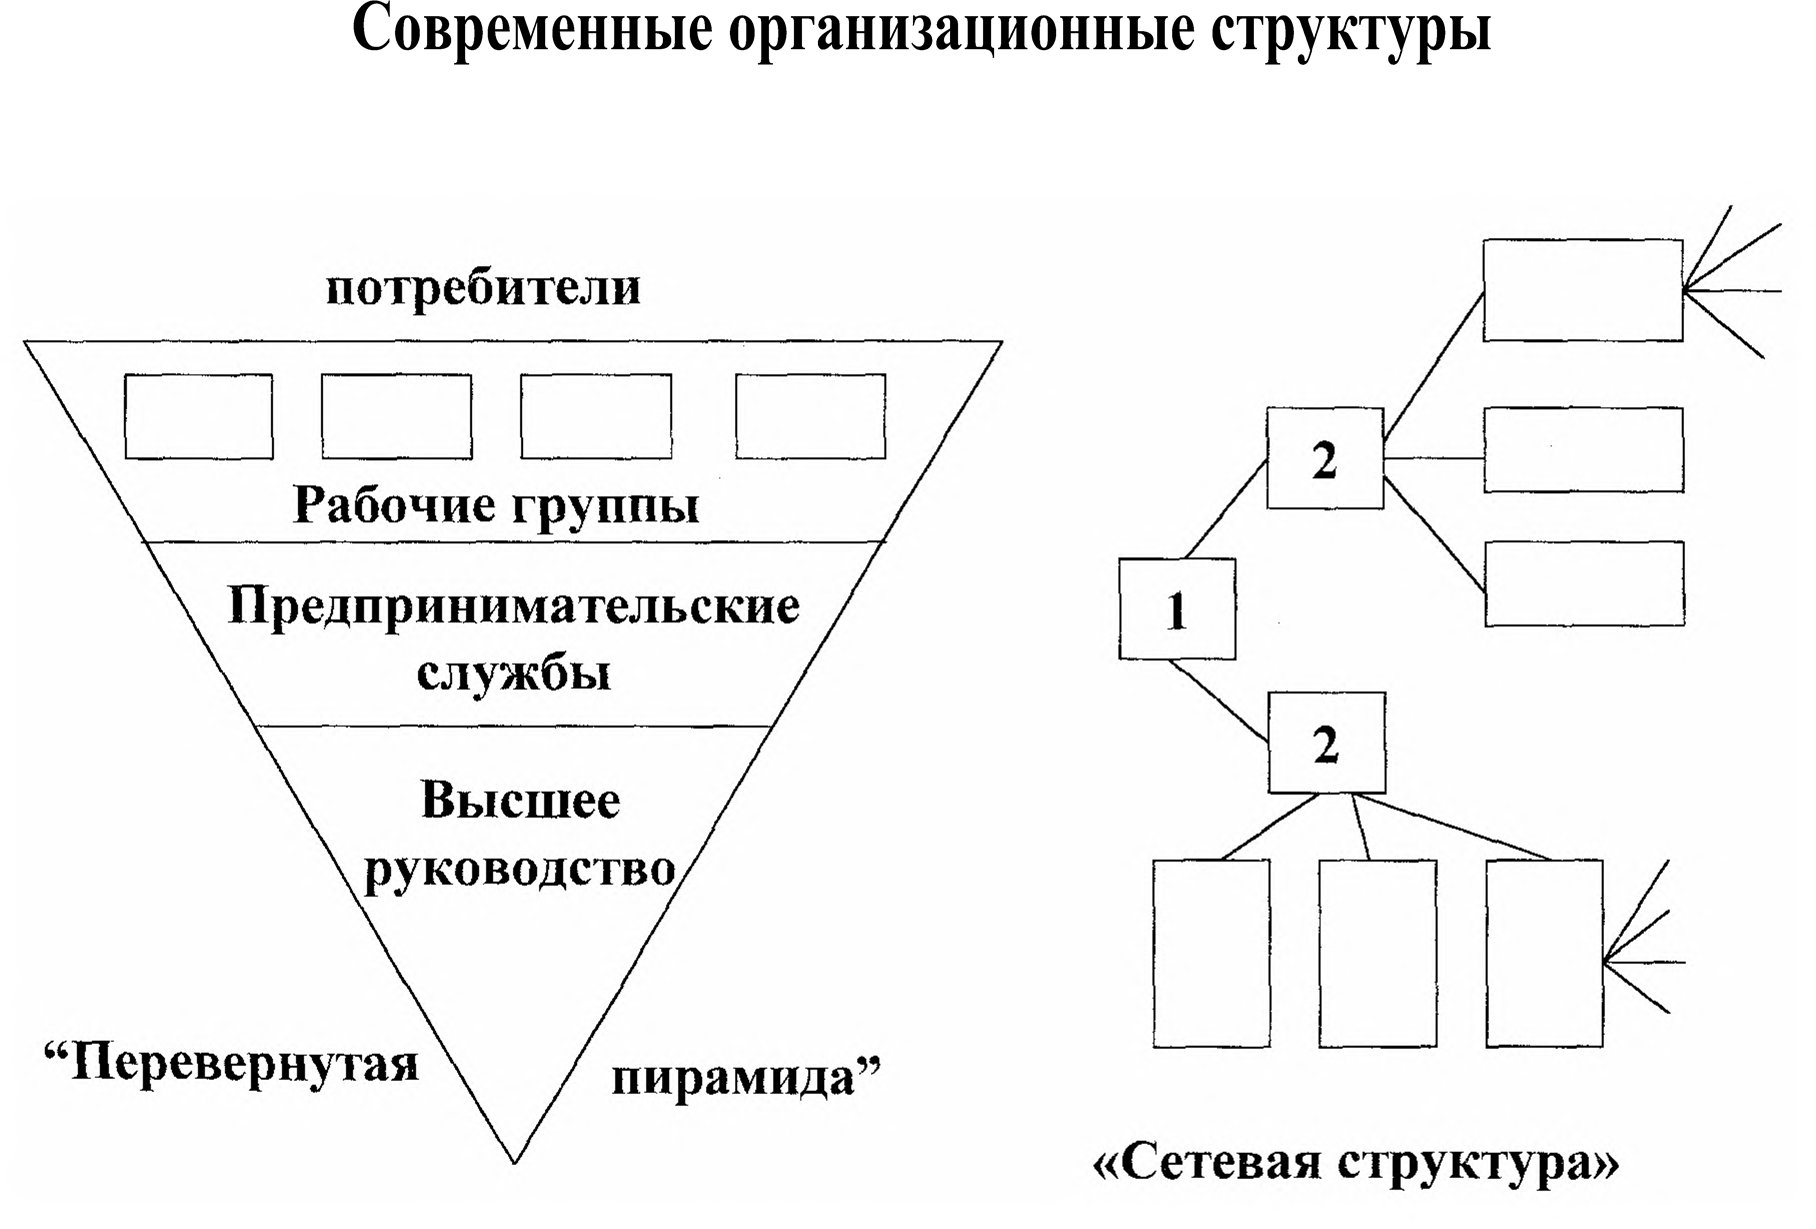 Современные организационные структуры